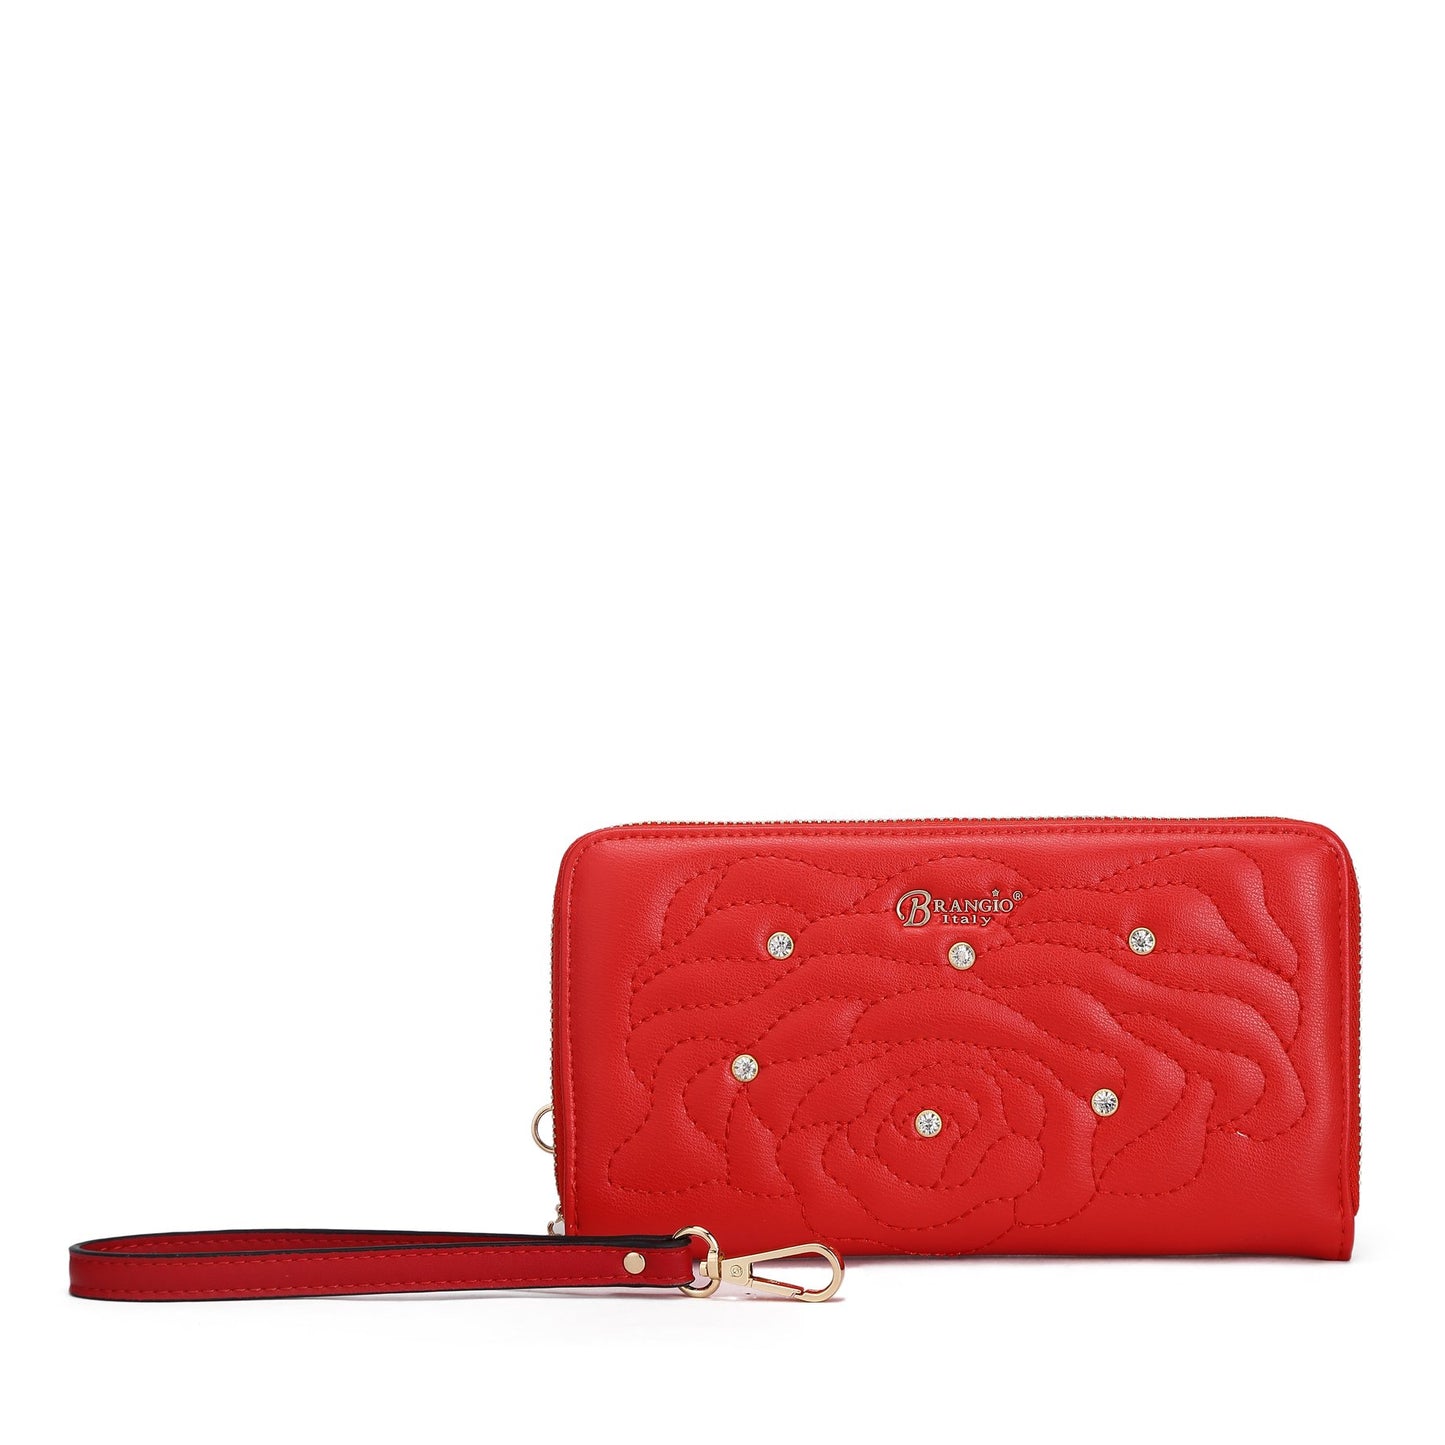 Rosette Crystal Medium Satchel Handbag Red